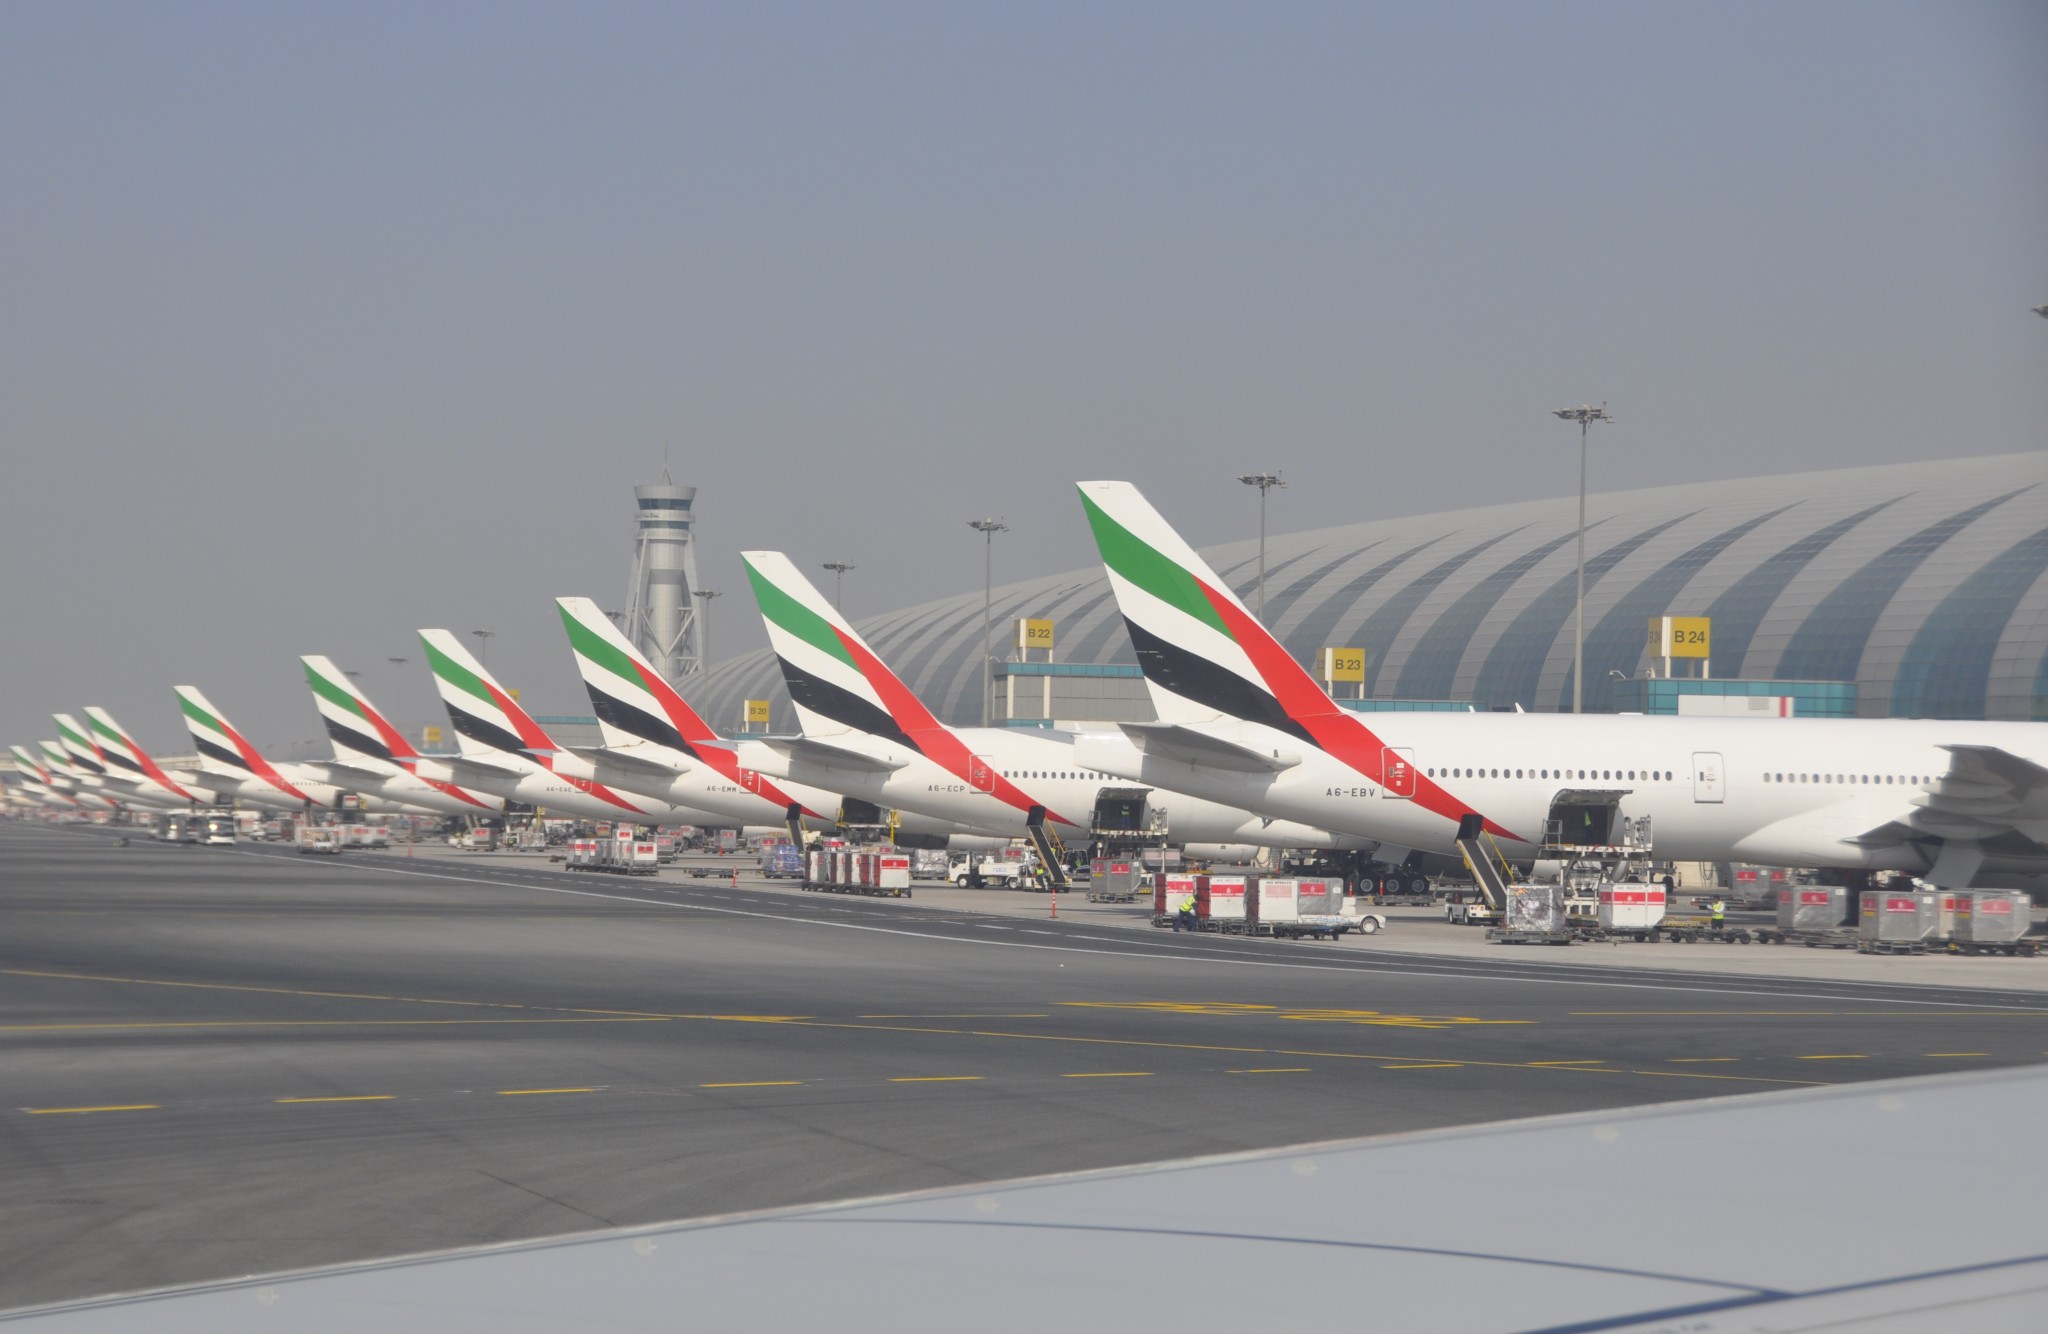 Emirates airline to launch premium economy in 2020